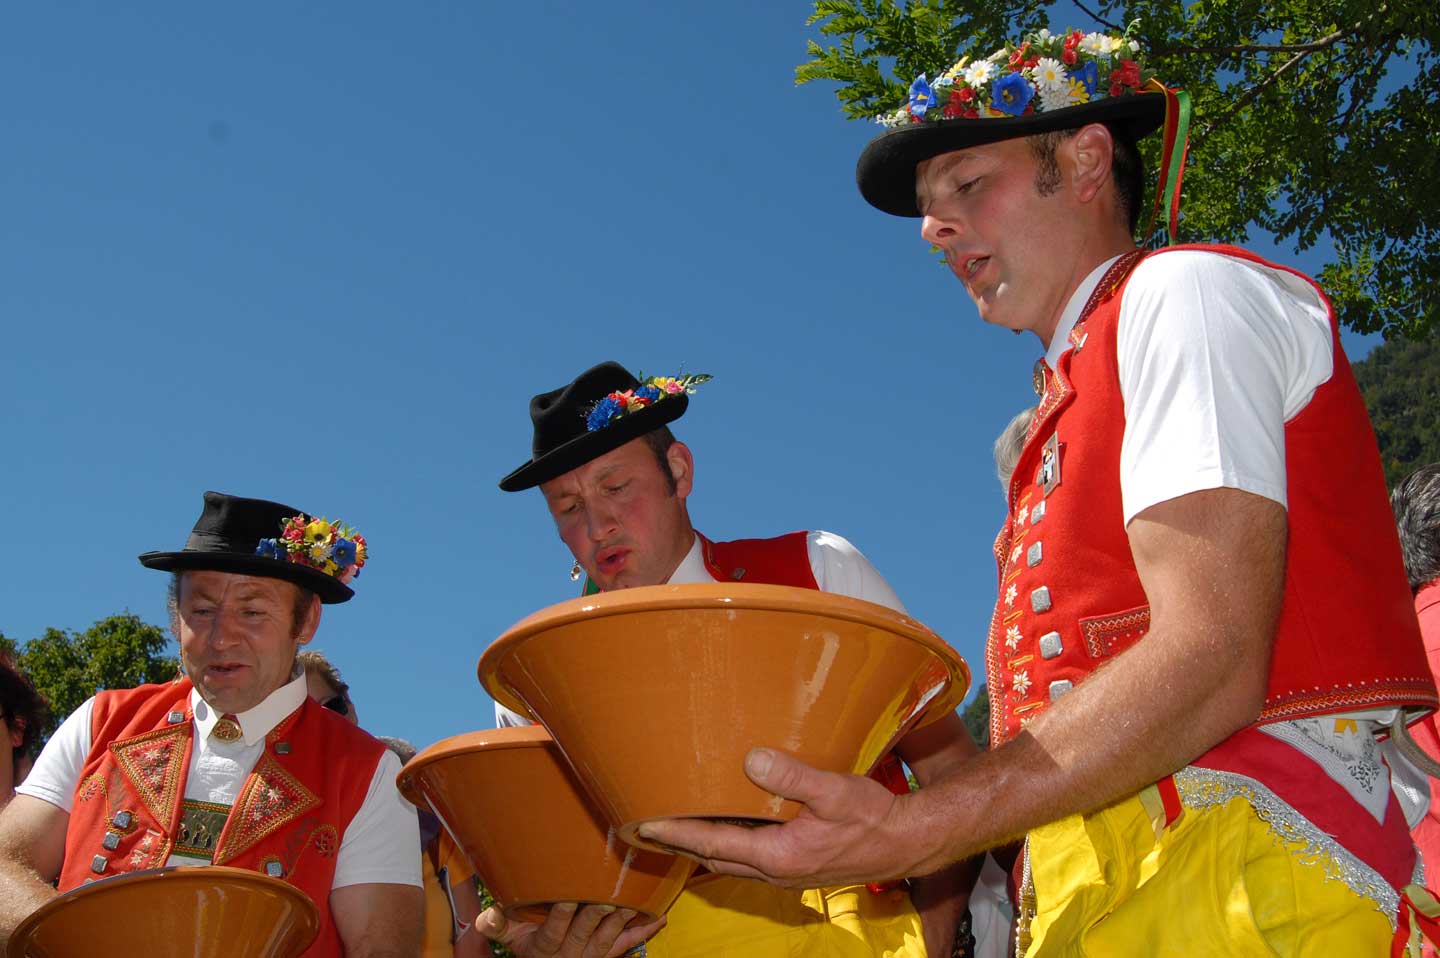 Talerschwinger (a musical tradition in which performers roll a five franc coin around the rim of a ceramic bowl) from Appenzell at the 2006 Unspunnen festival © Steiner/Verein Schweizerisches Trachten- und Alphirtenfest Unspunnen